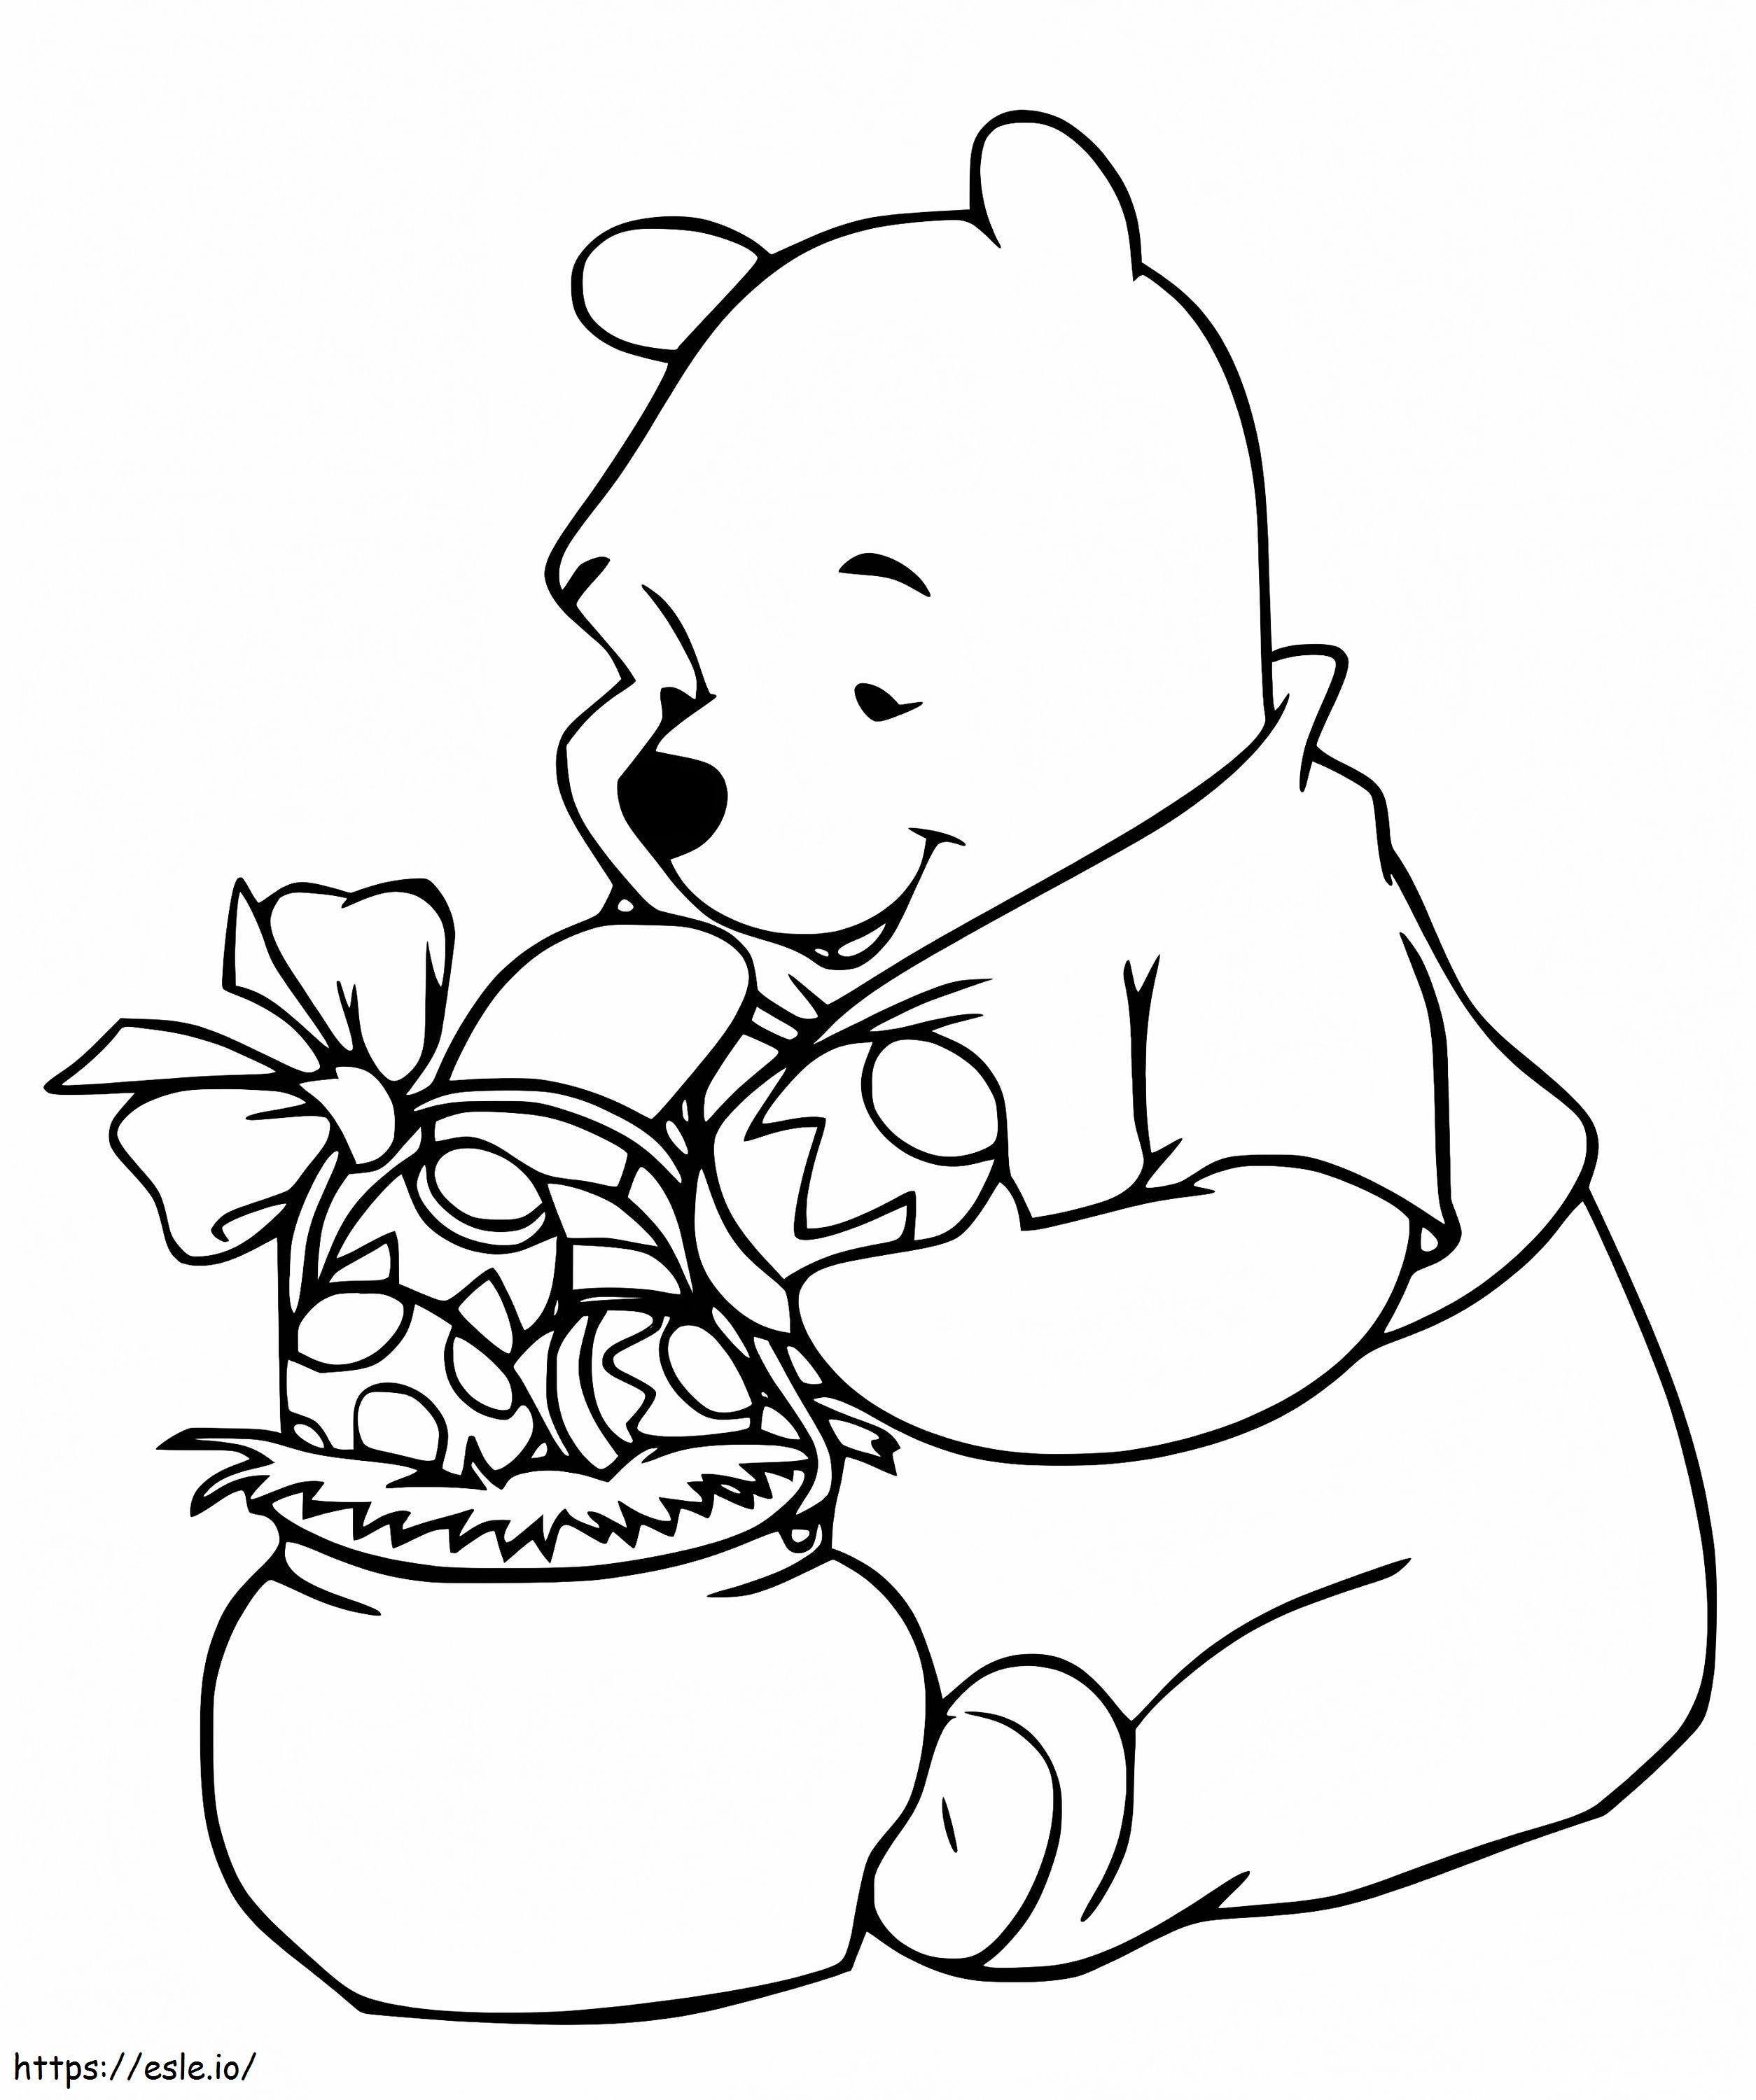 Ursinho Pooh com cesta de Páscoa para colorir